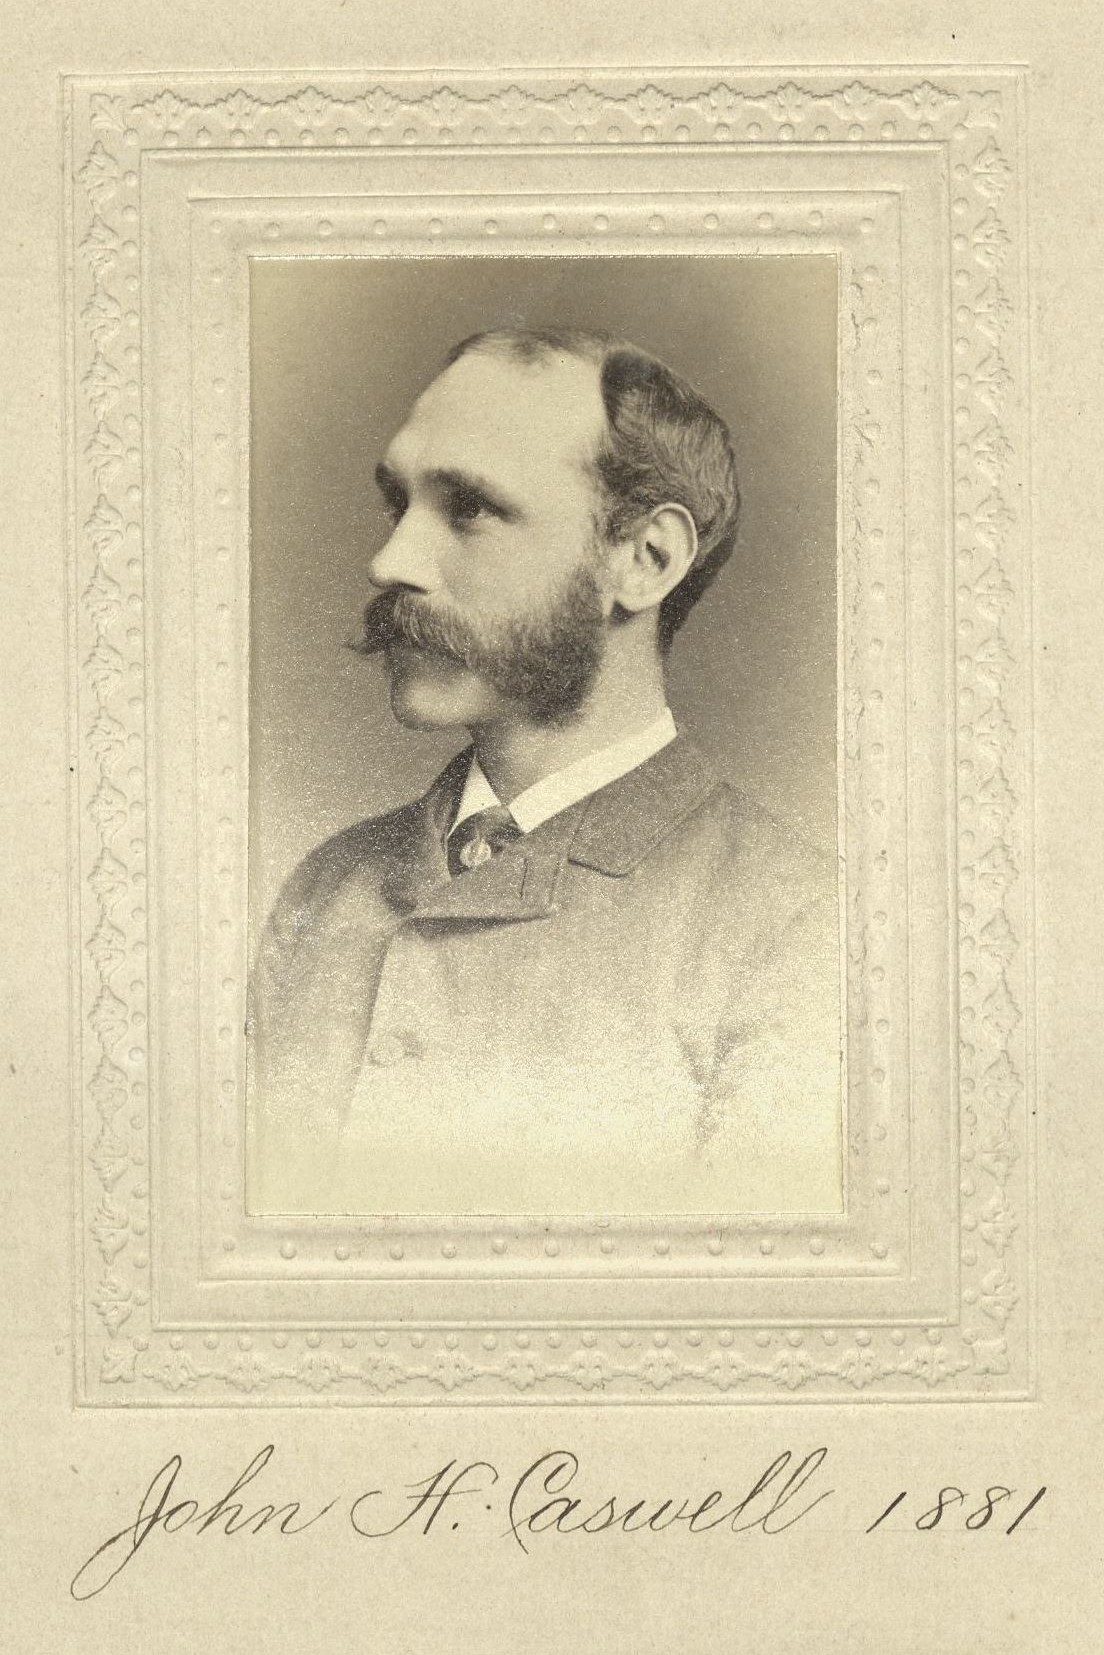 Member portrait of John H. Caswell